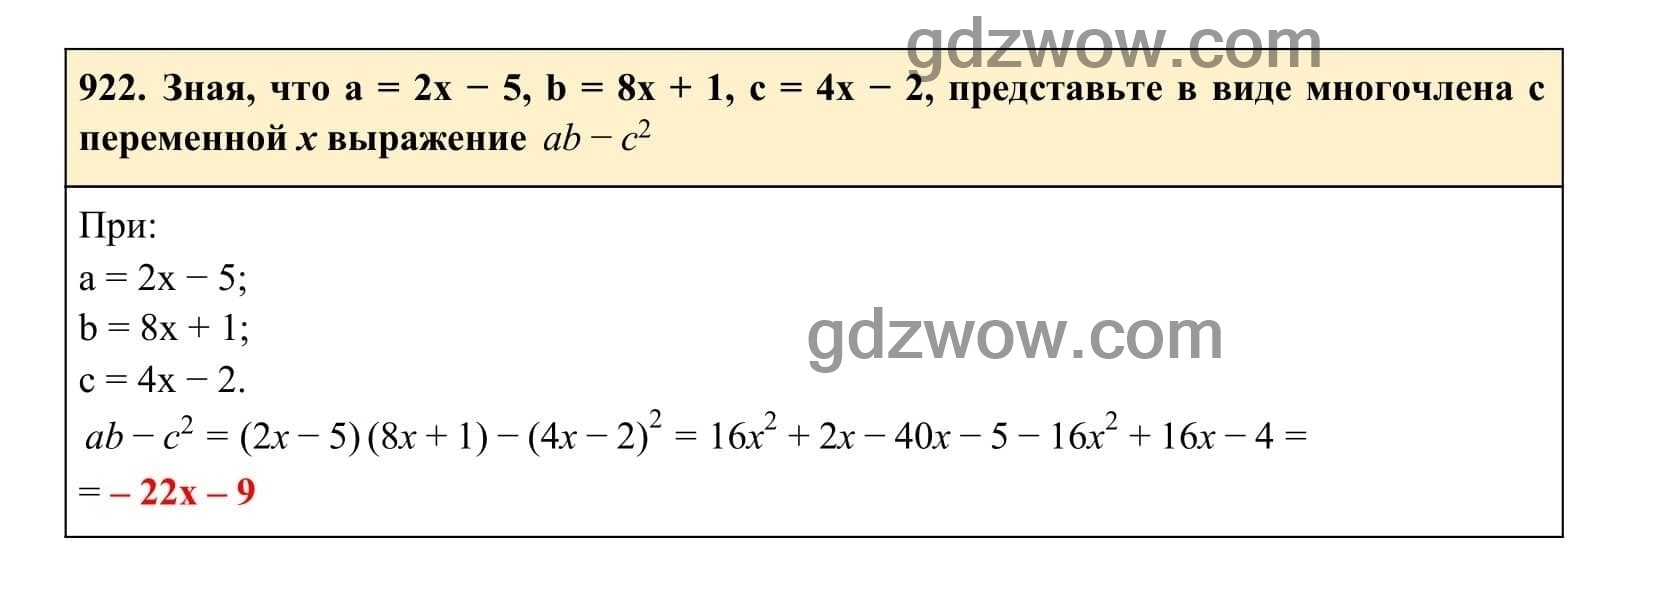 Упражнение 922 - ГДЗ по Алгебре 7 класс Учебник Макарычев (решебник) - GDZwow